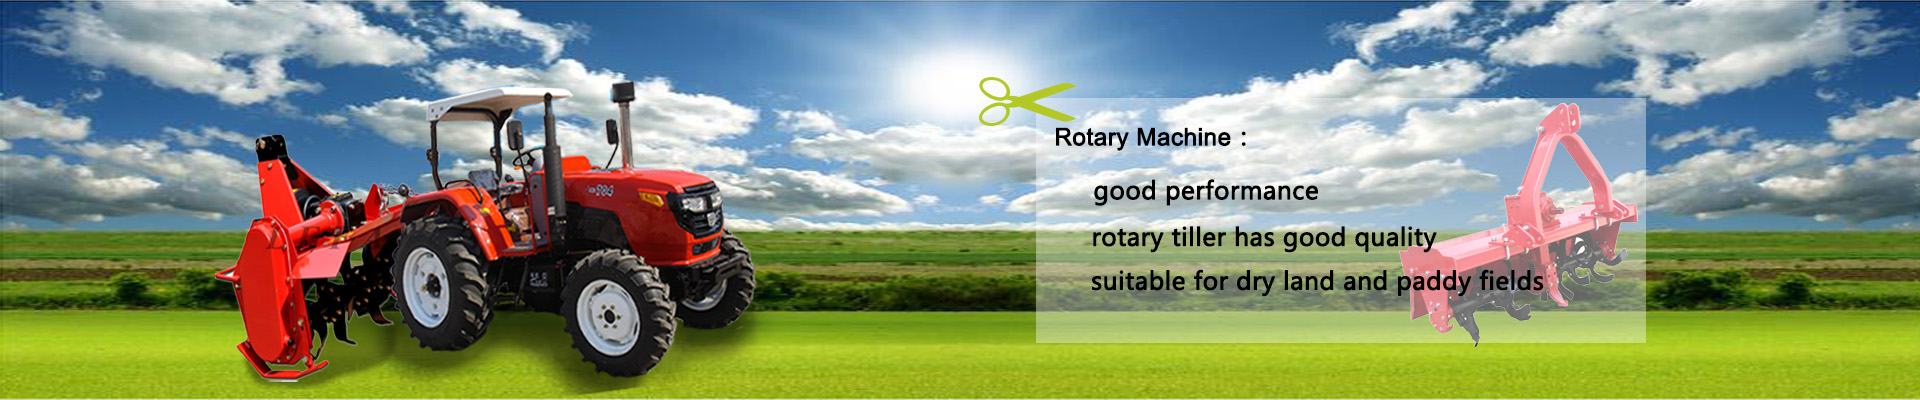 Rotary Machine